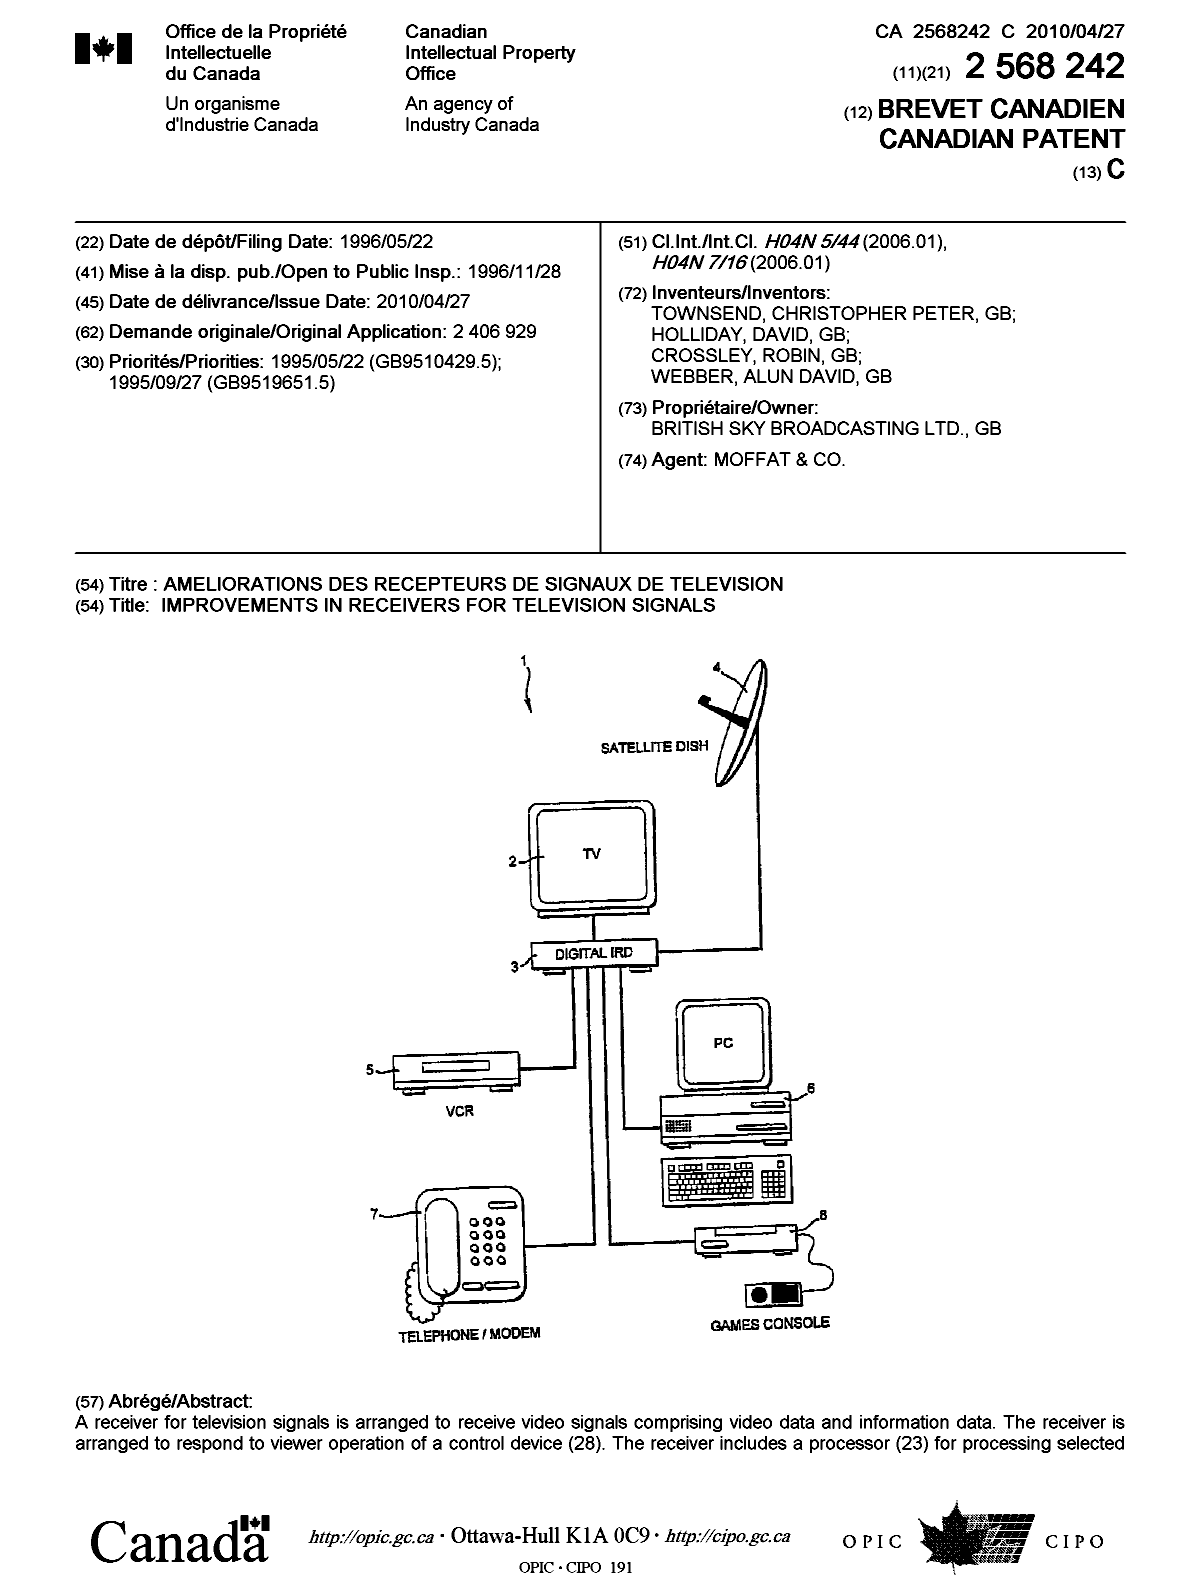 Document de brevet canadien 2568242. Page couverture 20100408. Image 1 de 2